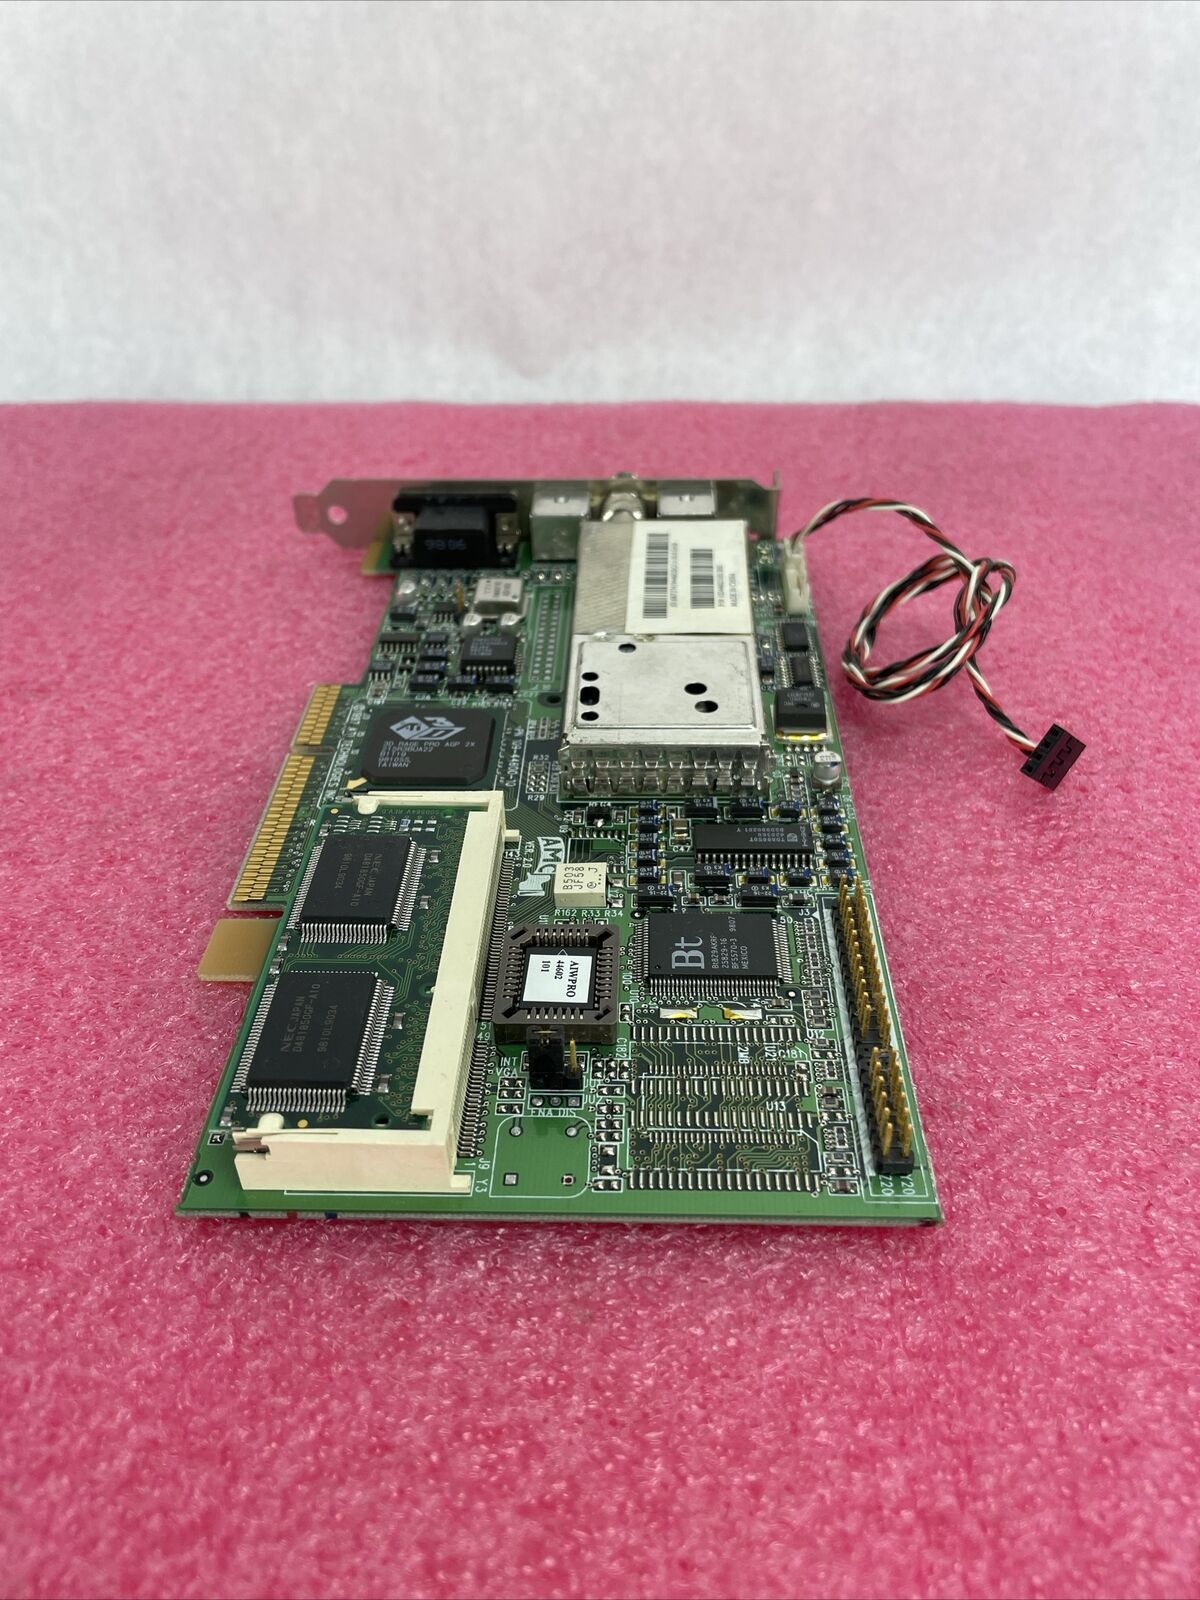 ATI 3D Rage Pro AGP 2x 109-44600-10 8MB Graphics Card